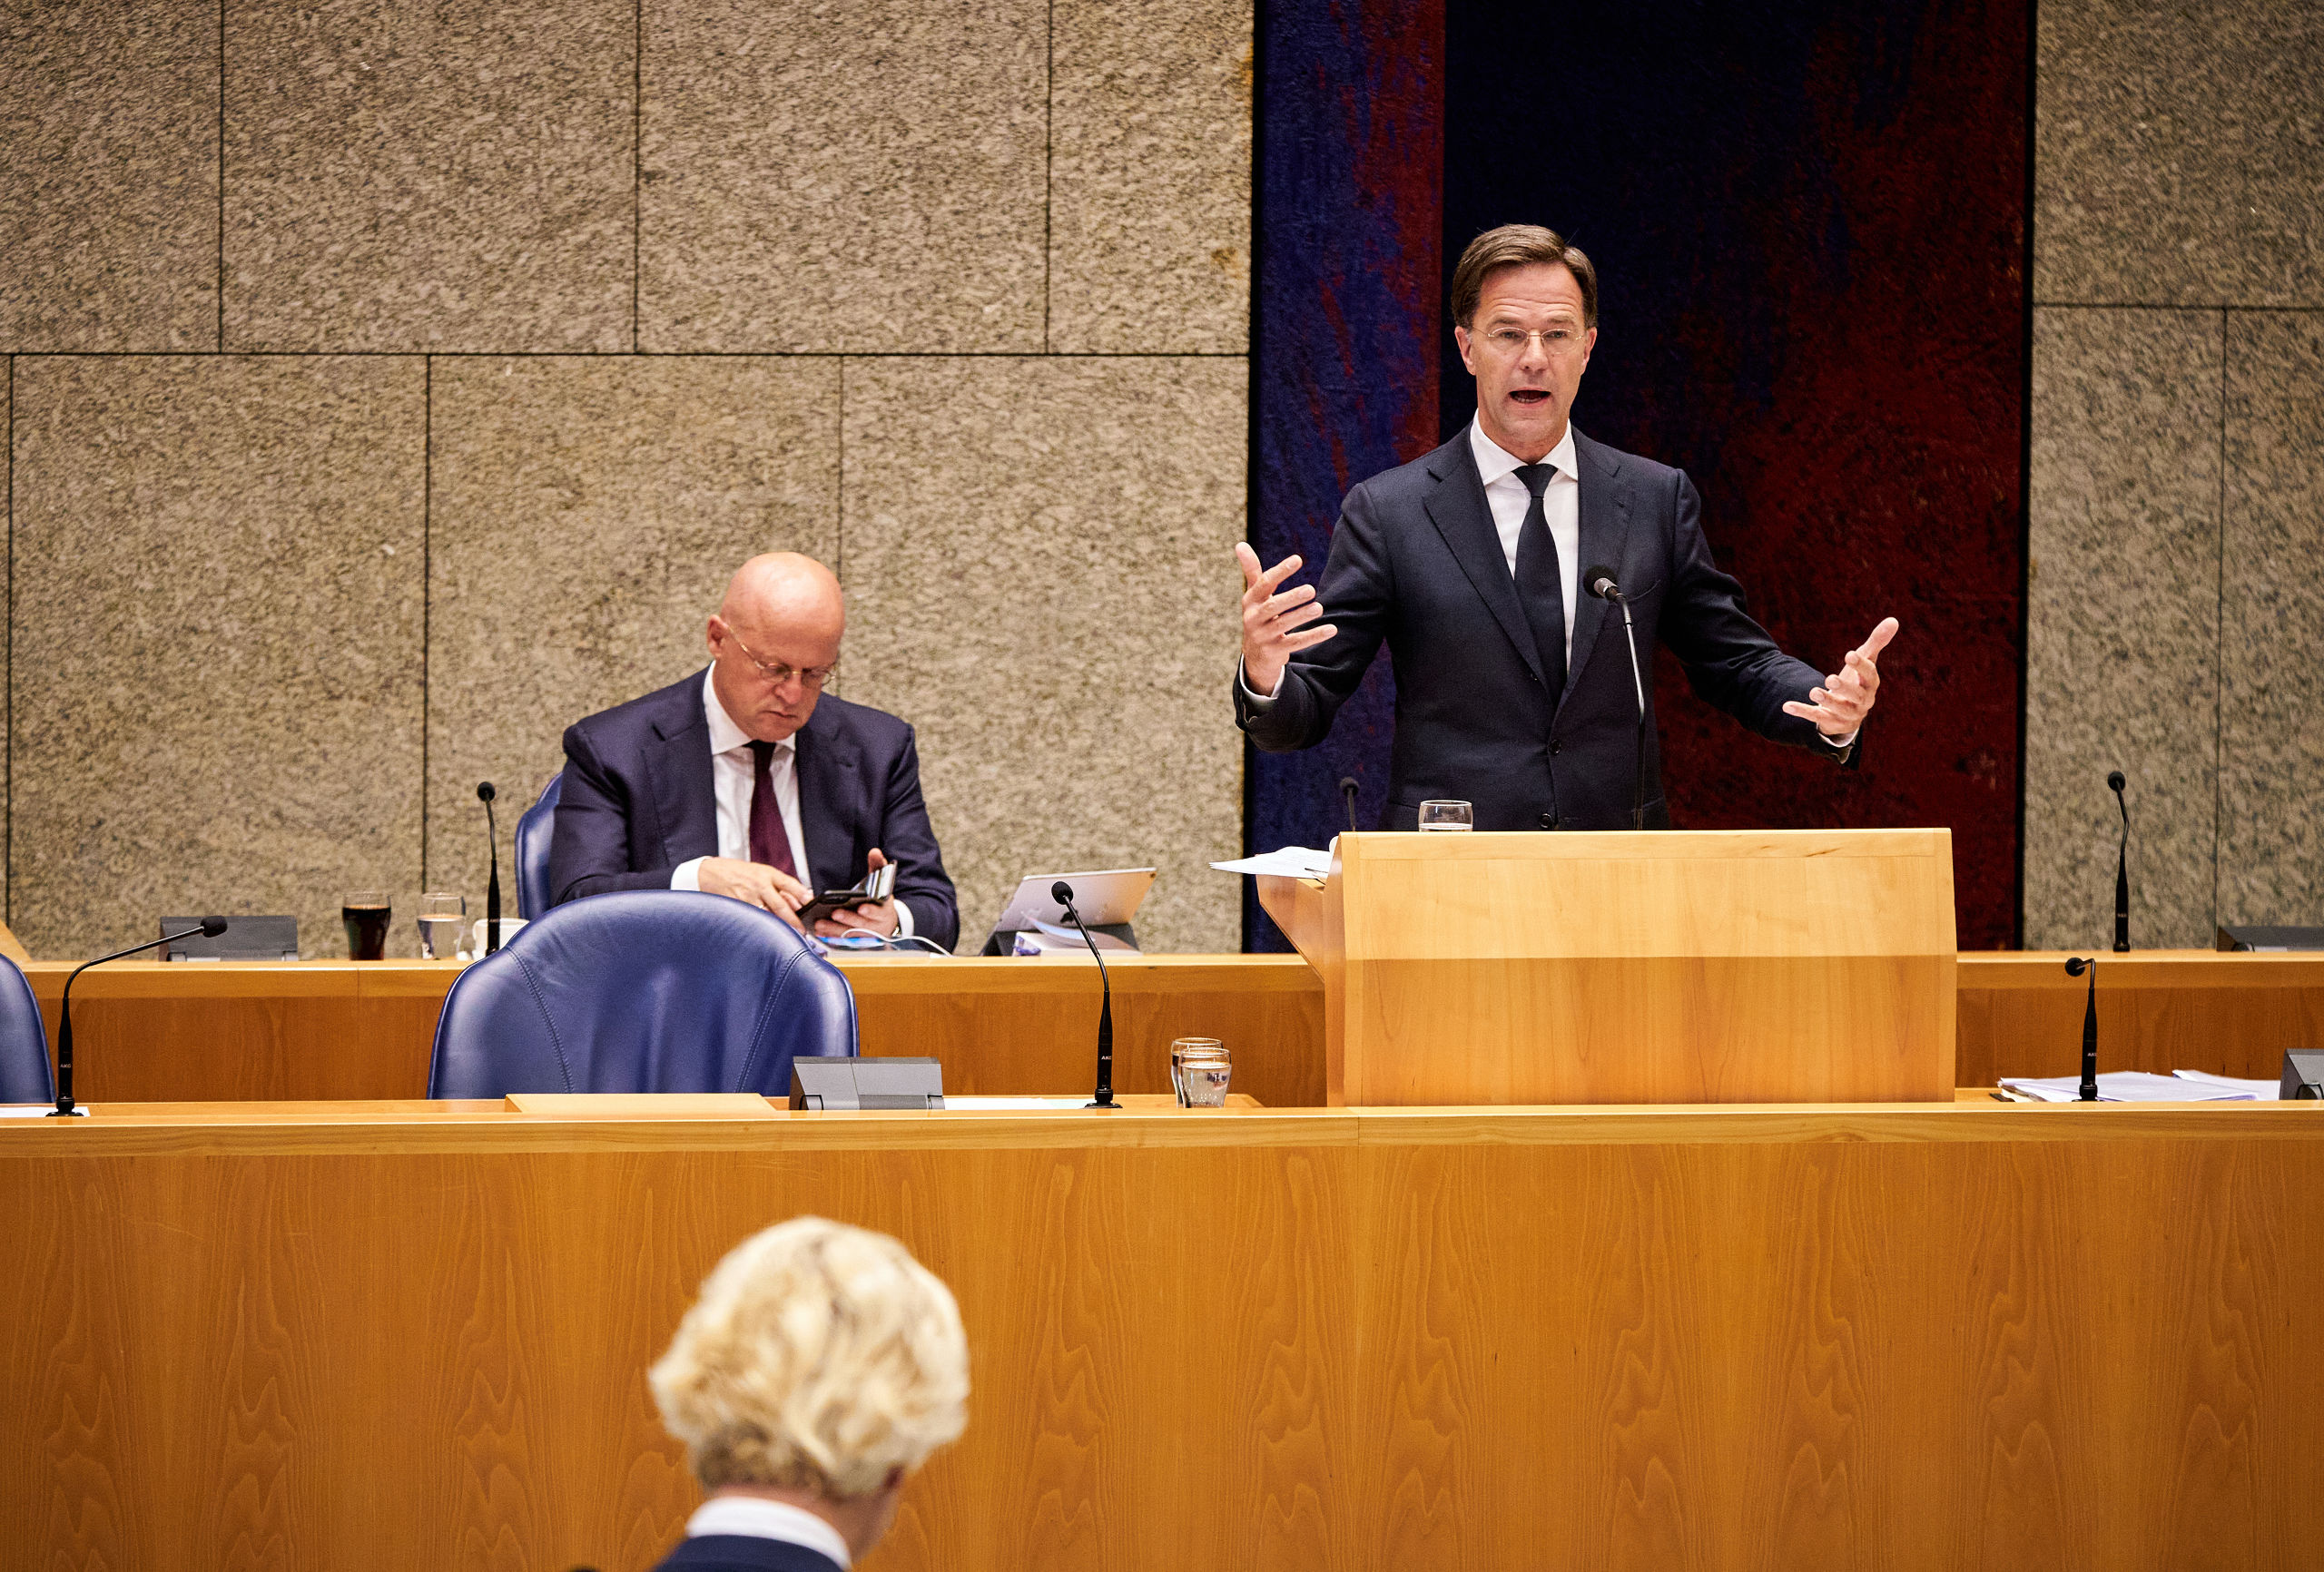 Minister Ferdinand Grapperhaus van Justitie en Veiligheid (CDA), premier Mark Rutte en Geert Wilders (PVV) in de Tweede Kamer tijdens een debat over institutioneel racisme in Nederland.